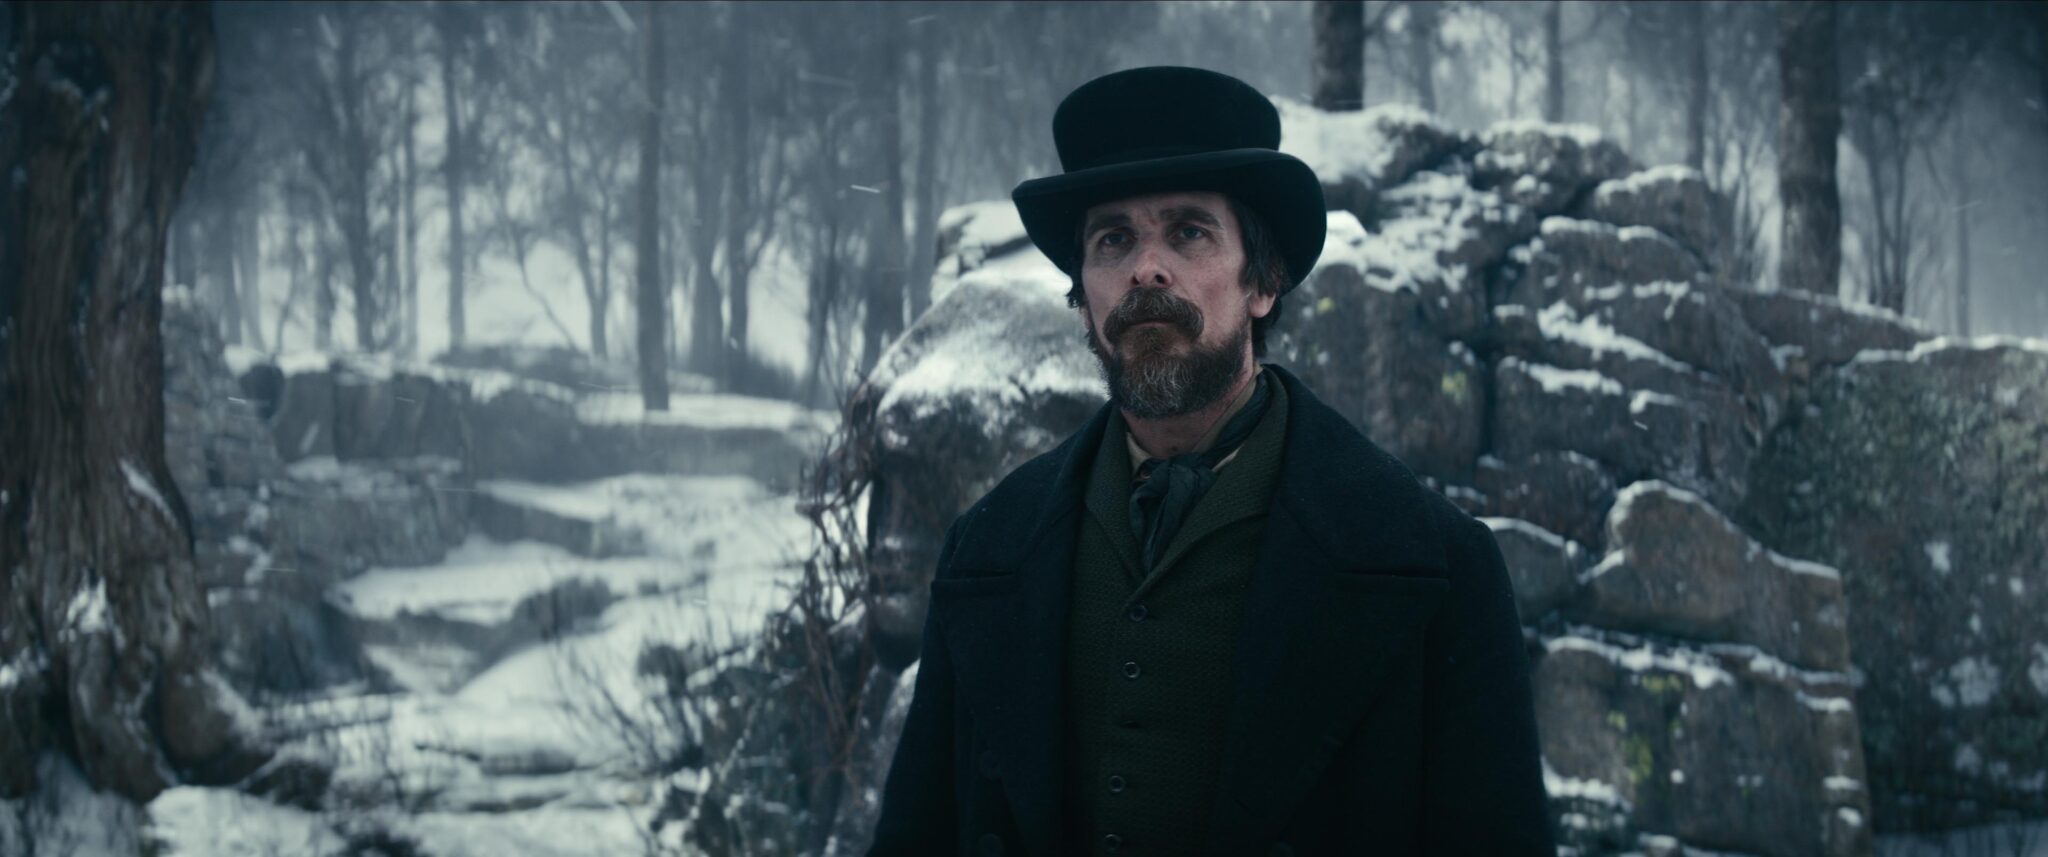 Christian Bale steht in einer verschneiten Szenerie vor einer Steinmauer mit dunklem Mantel über dunkelgrünem Jackett. Der denkwürdige Fall des Mr. Poe